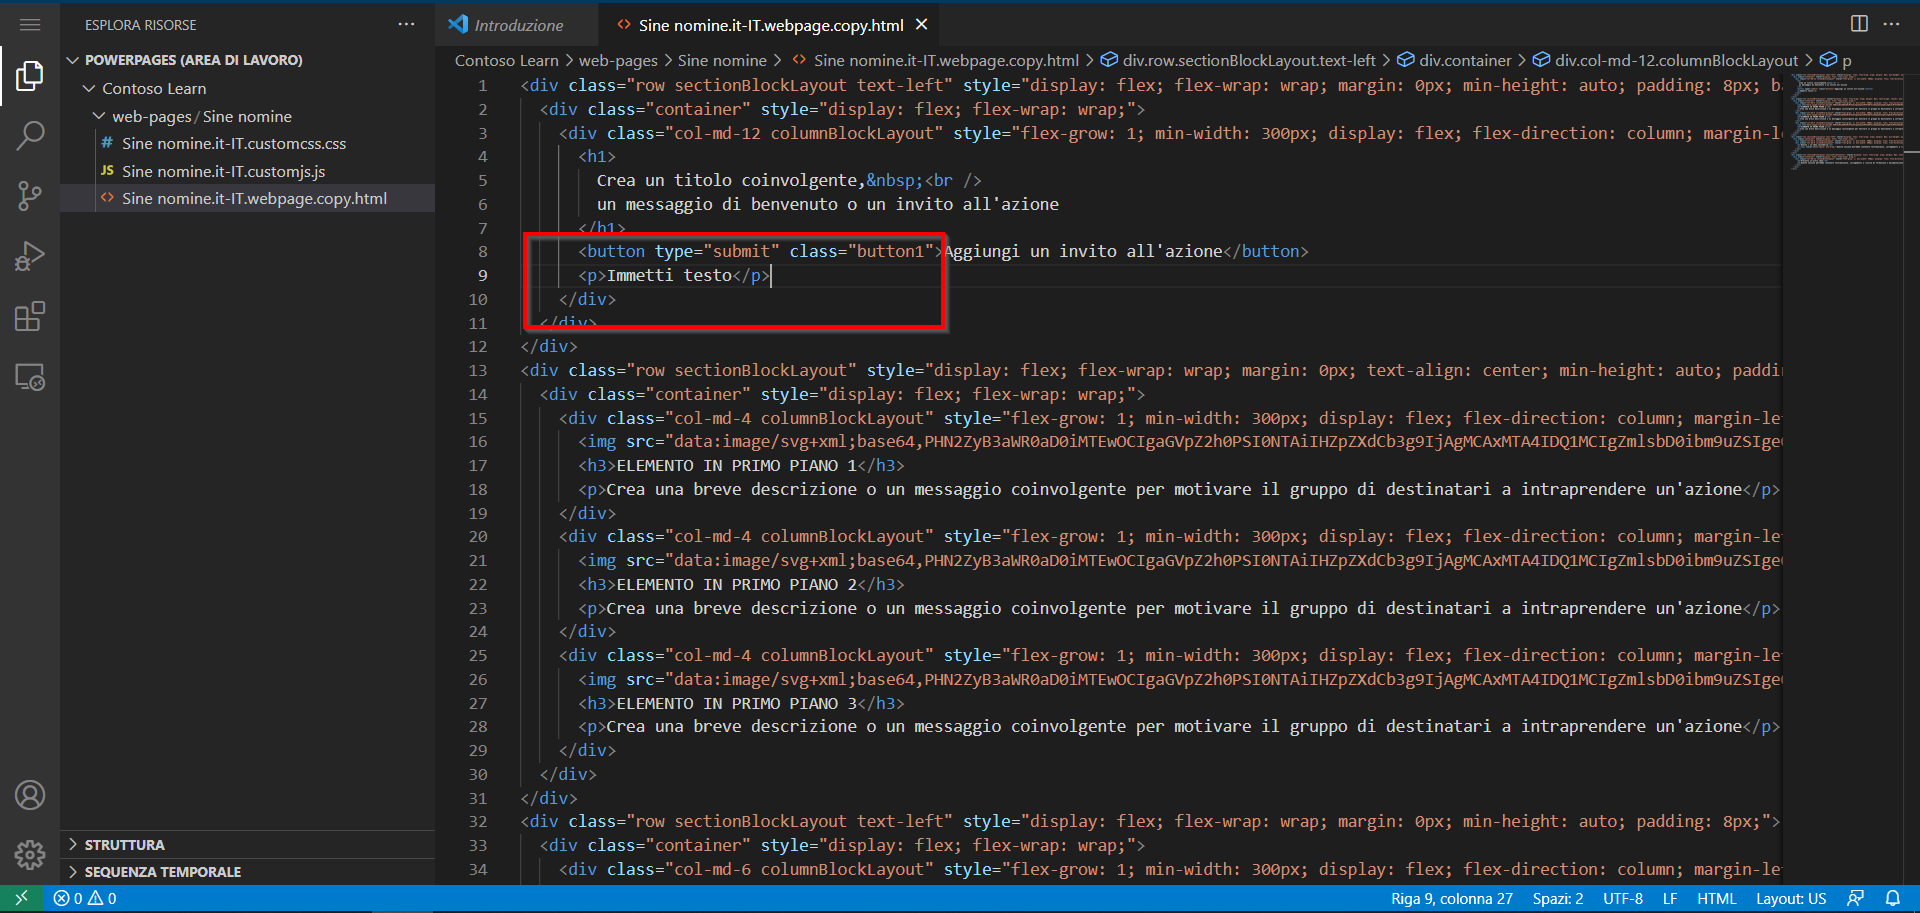 Screenshot del contenuto della pagina aperto nell'editor di Visual Studio Code per il Web con il paragrafo di testo evidenziato.